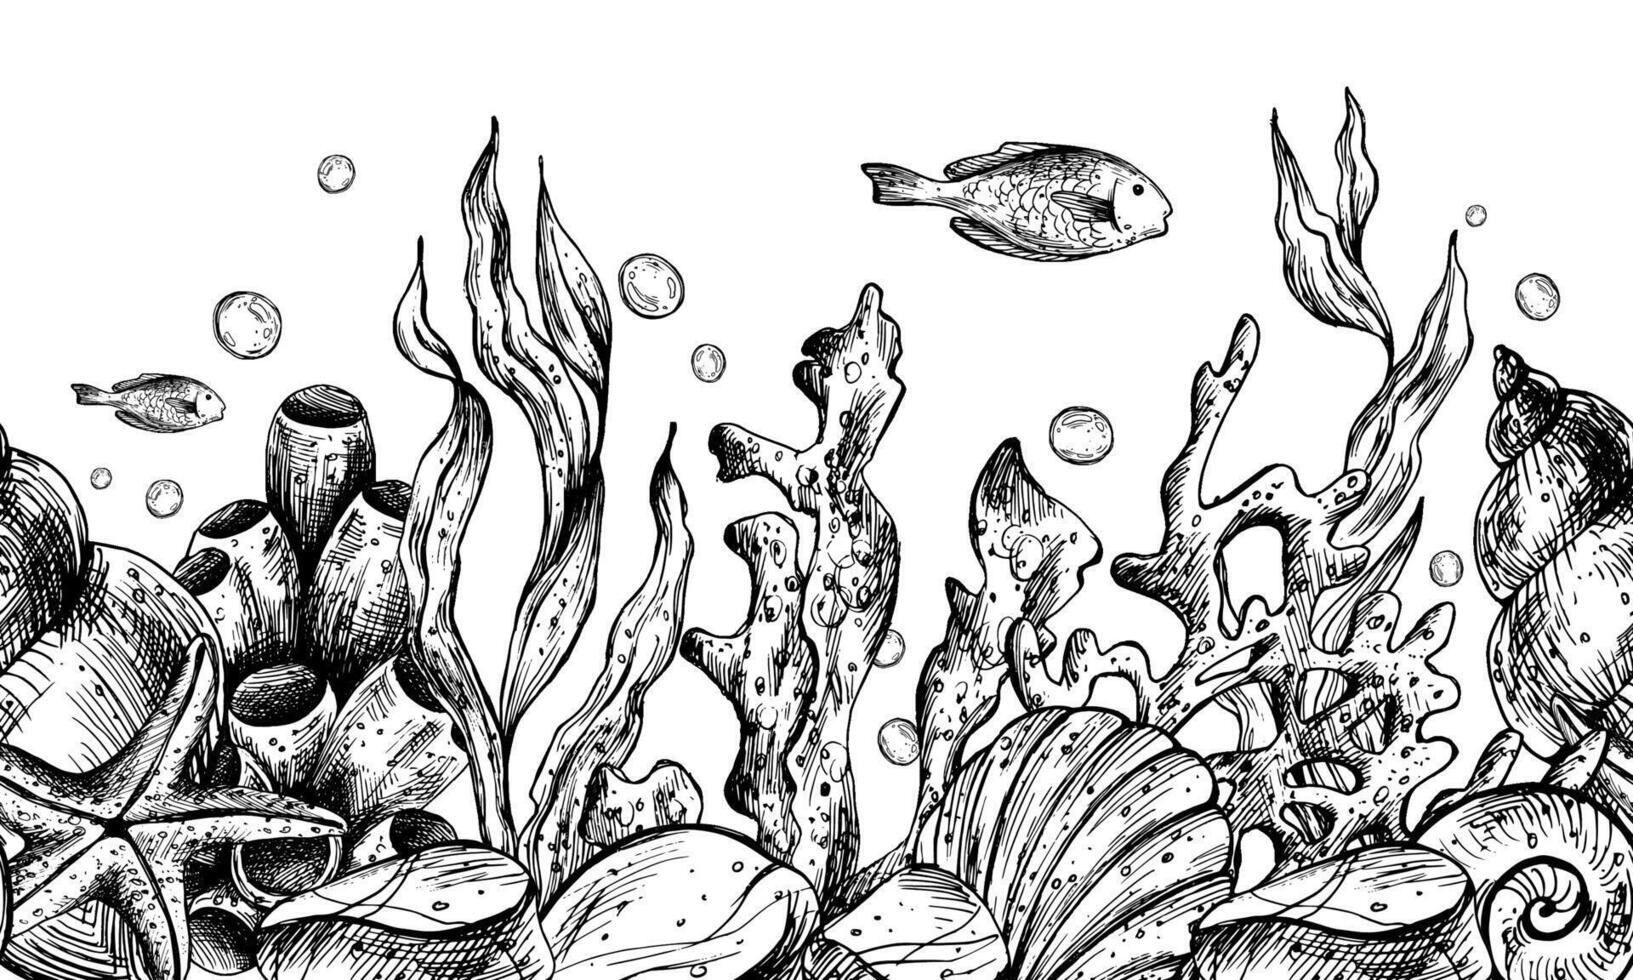 onderwater- wereld clip art met zee dieren walvis, schildpad, Octopus, zeepaardje, zeester, schelpen, koraal en algen. grafisch illustratie hand- getrokken in zwart inkt. naadloos grens eps vector